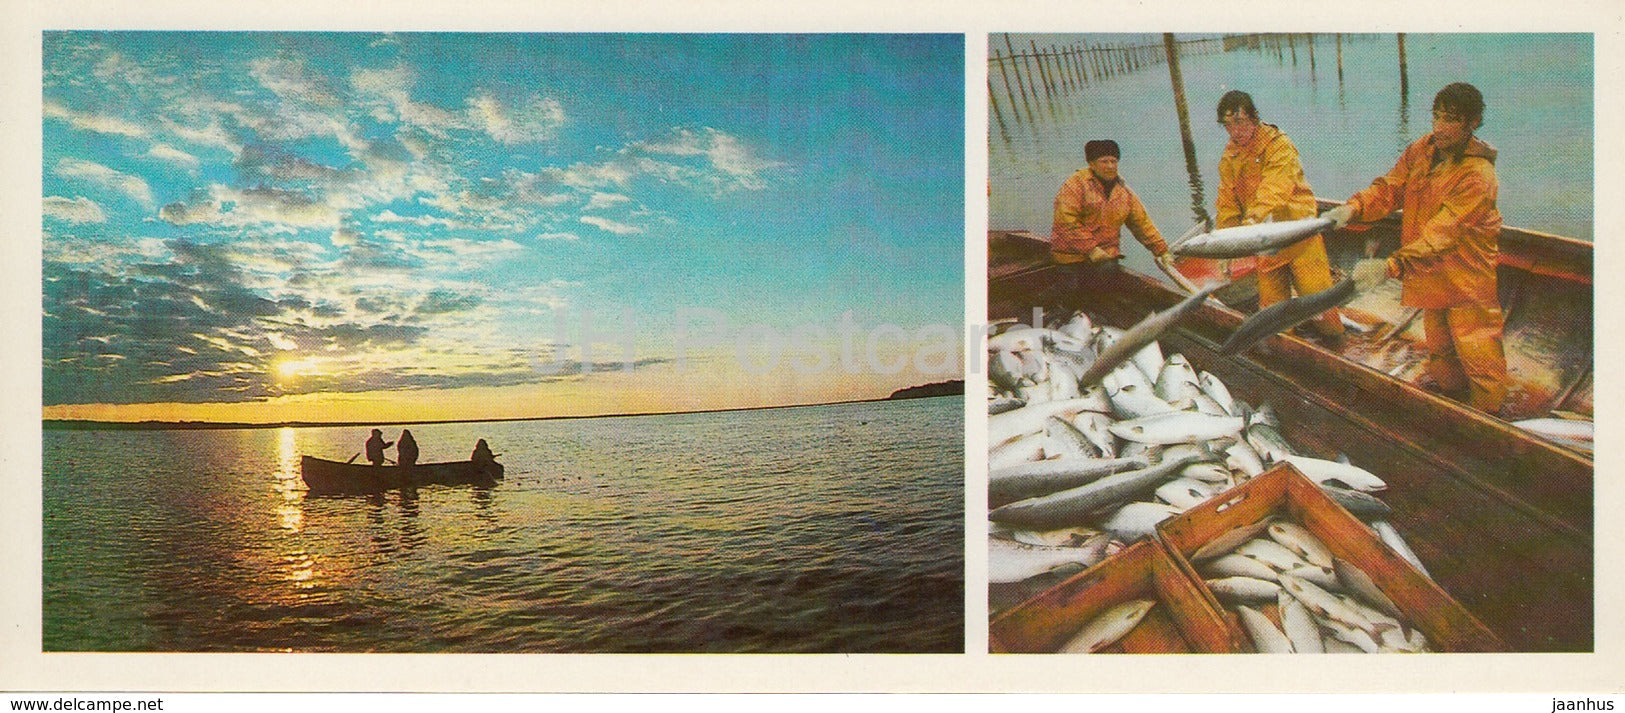 Fishing - fishermen - Komi Republic - 1984 - Russia USSR - unused - JH Postcards